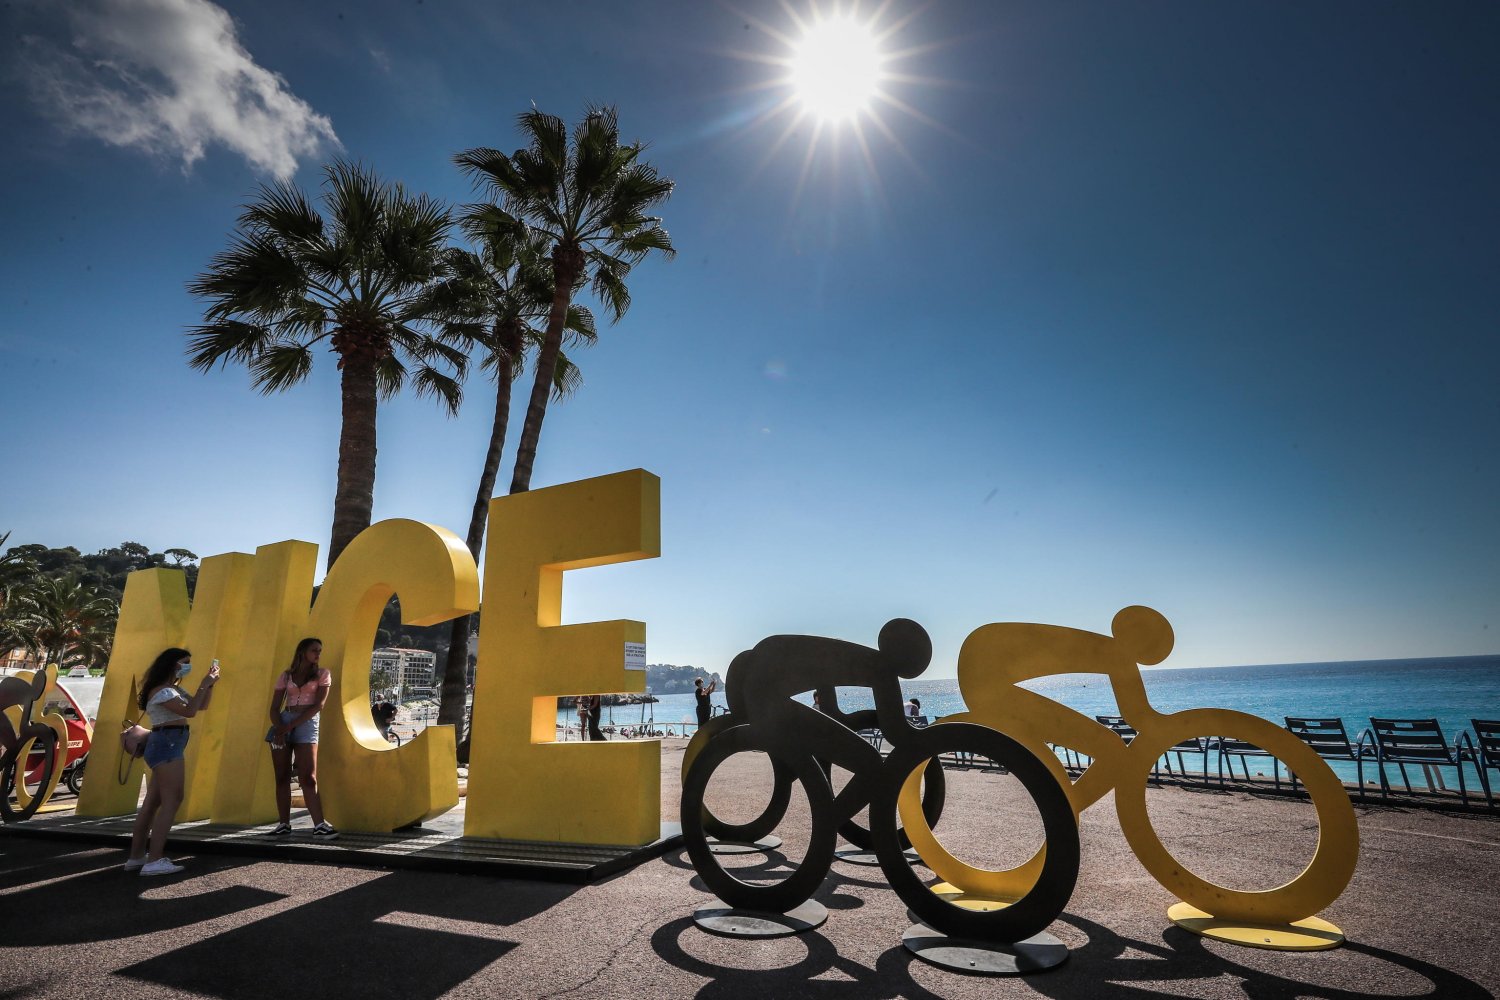 Ciclismo, al via 107esimo Tour de France 2020, diretta tv Rai 2 ed Eurosport